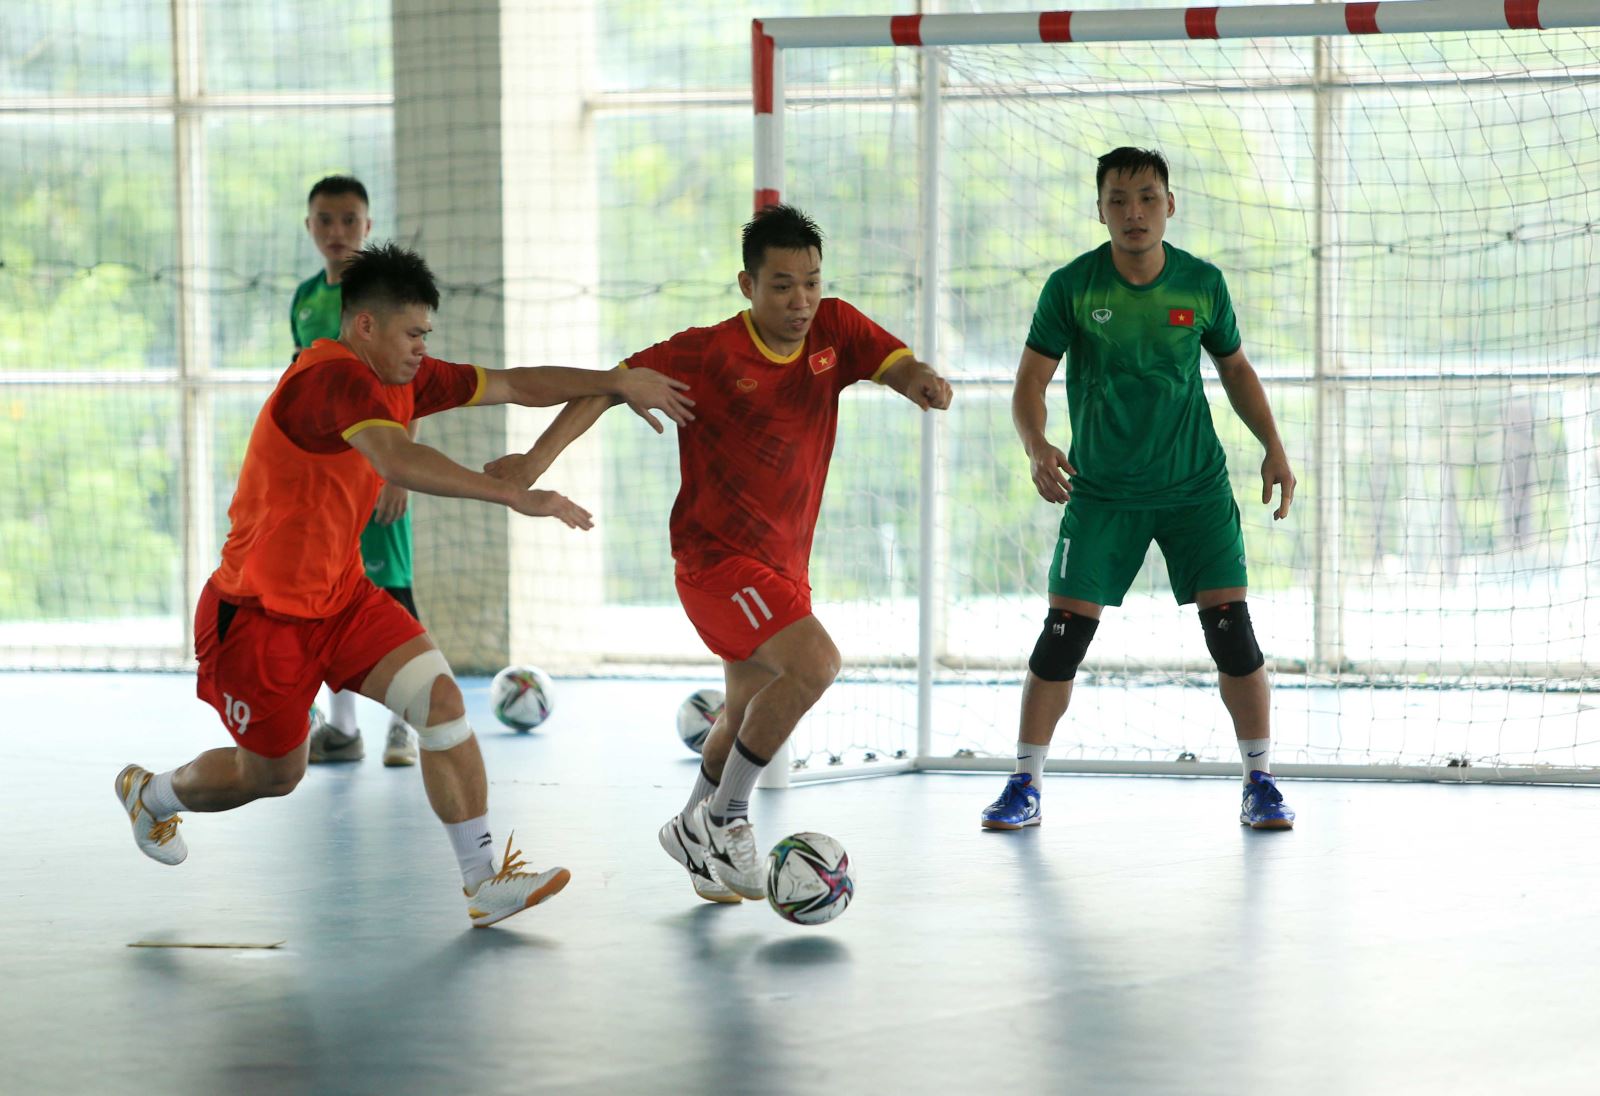 Futsal Việt Nam: Nếu bạn yêu thích môn thể thao Futsal, hãy đến ngay xem các trận đấu của Đội tuyển Futsal Việt Nam. Các cầu thủ sẽ mang lại cho bạn những pha bóng kỹ thuật, đẹp mắt và rất hấp dẫn.